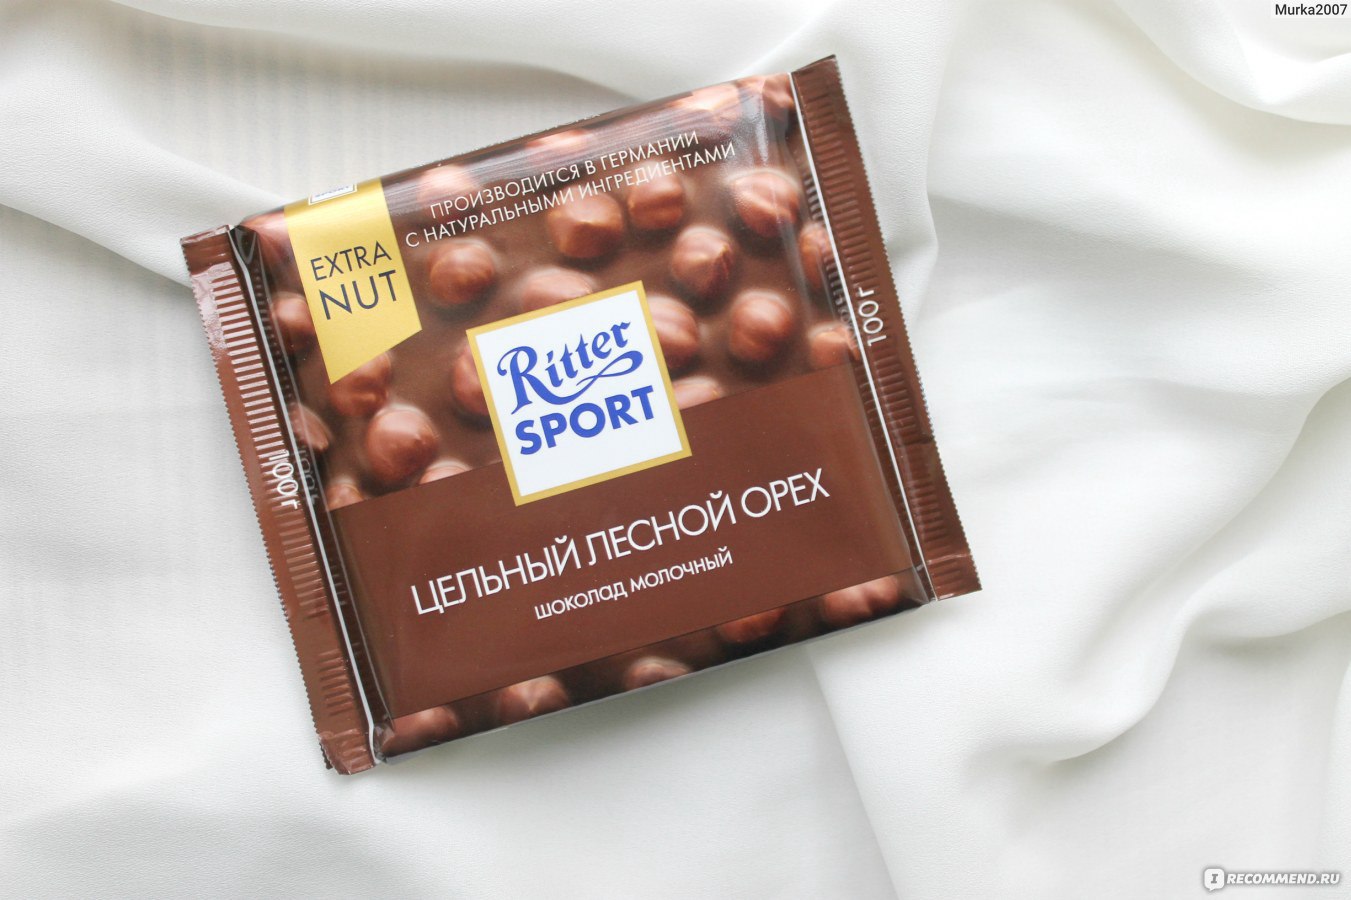 Шоколад Ritter Sport молочный с карамелью и лесным орехом